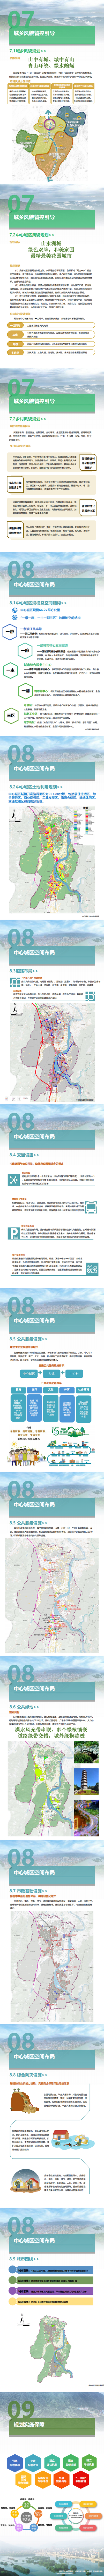 最终0324双牌县国土空间总体规划（2021-2035年）公示材料_01(1).png